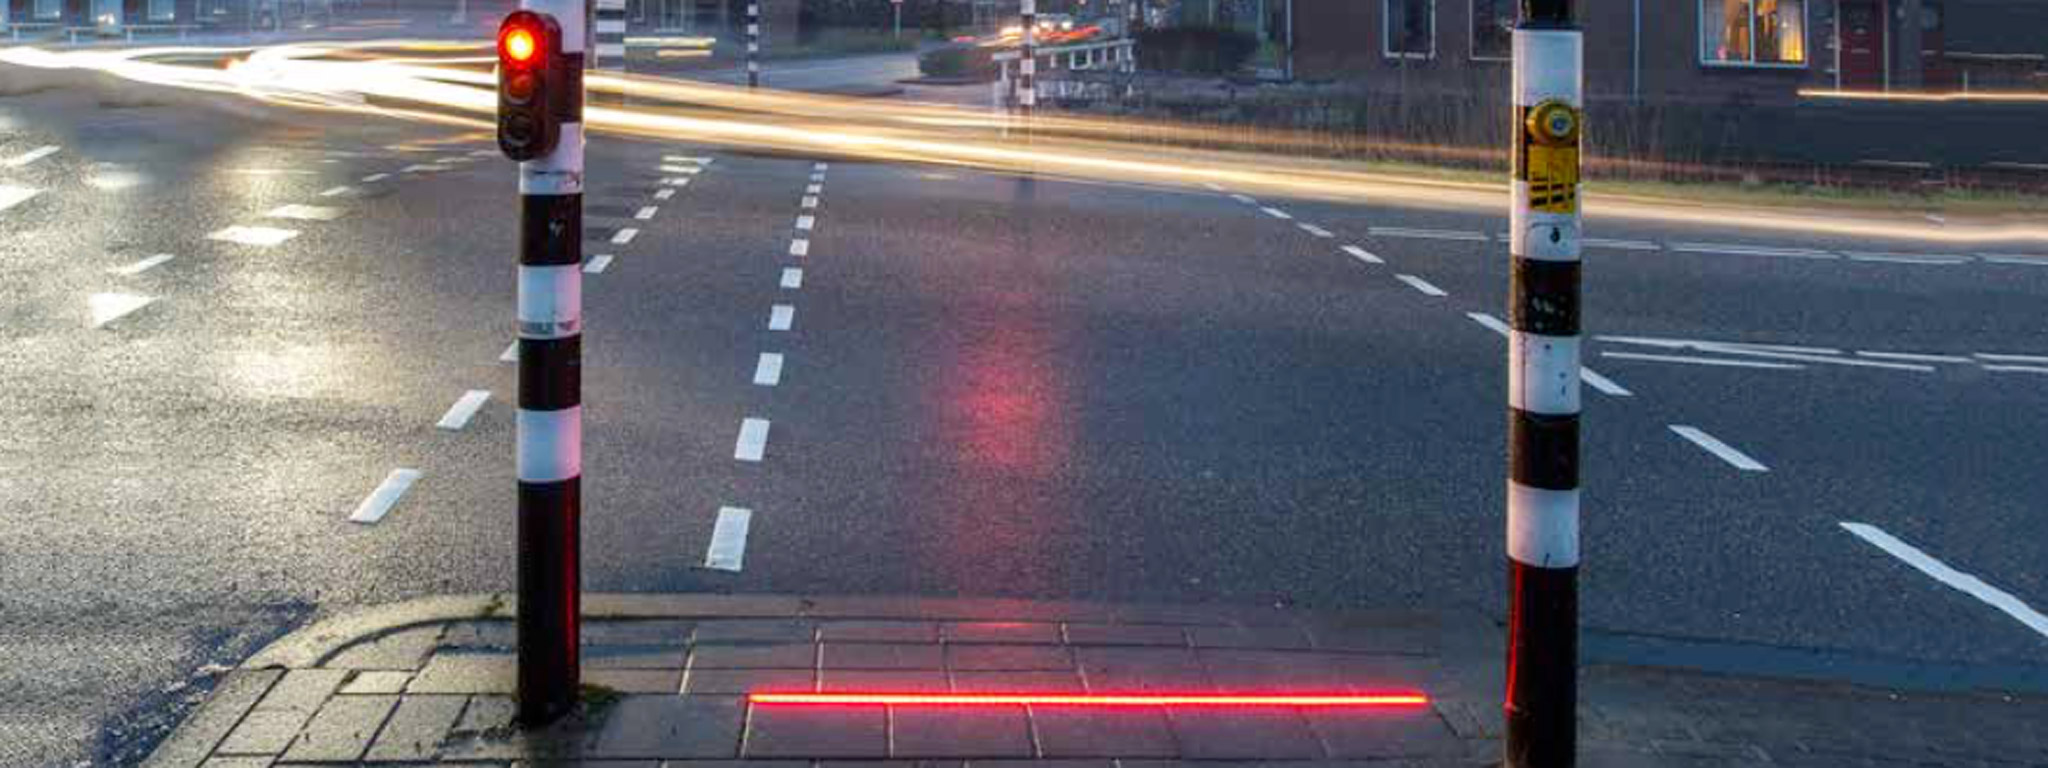 Đèn giao thông dành cho người "suốt ngày dán mắt vào điện thoại" ở Hà Lan